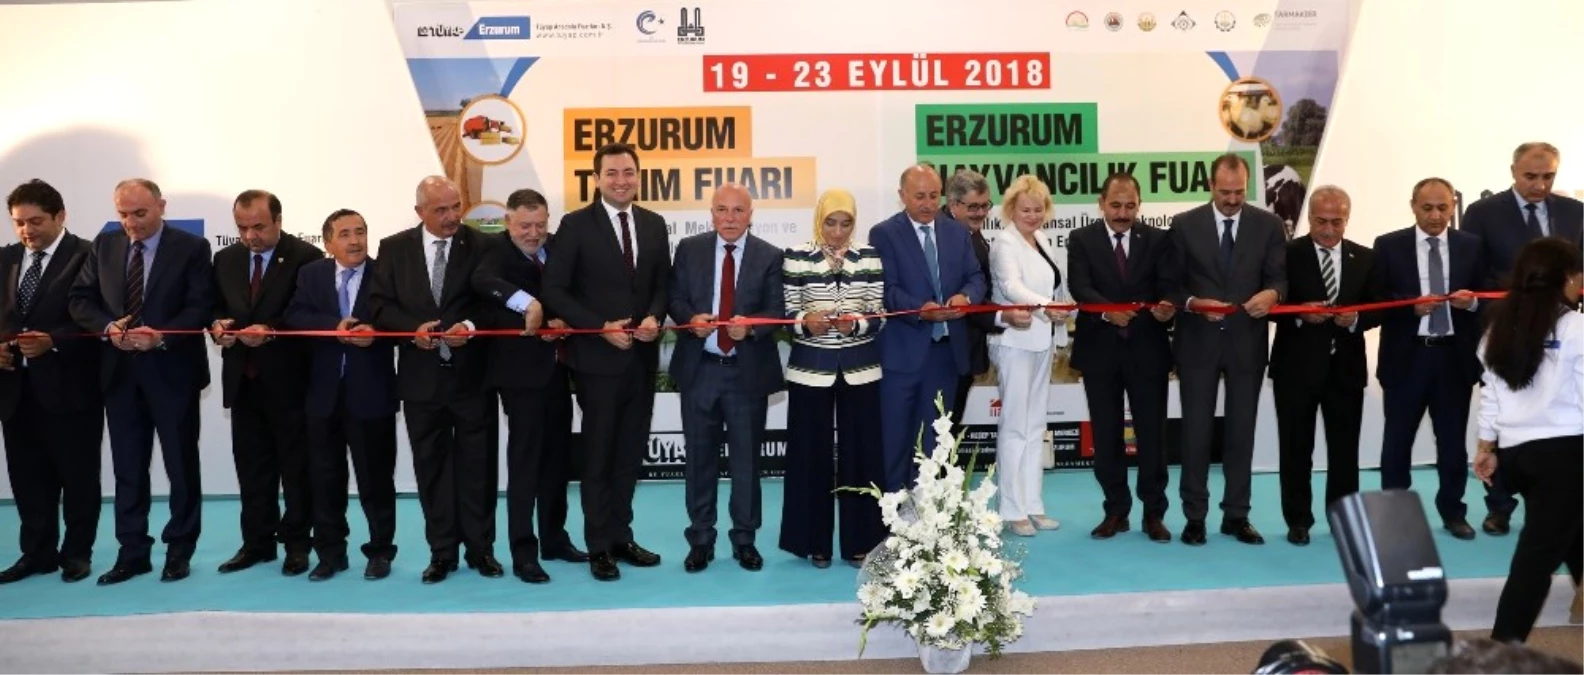 Tarım ve Hayvancılık Fuarı Erzurum\'da Açıldı